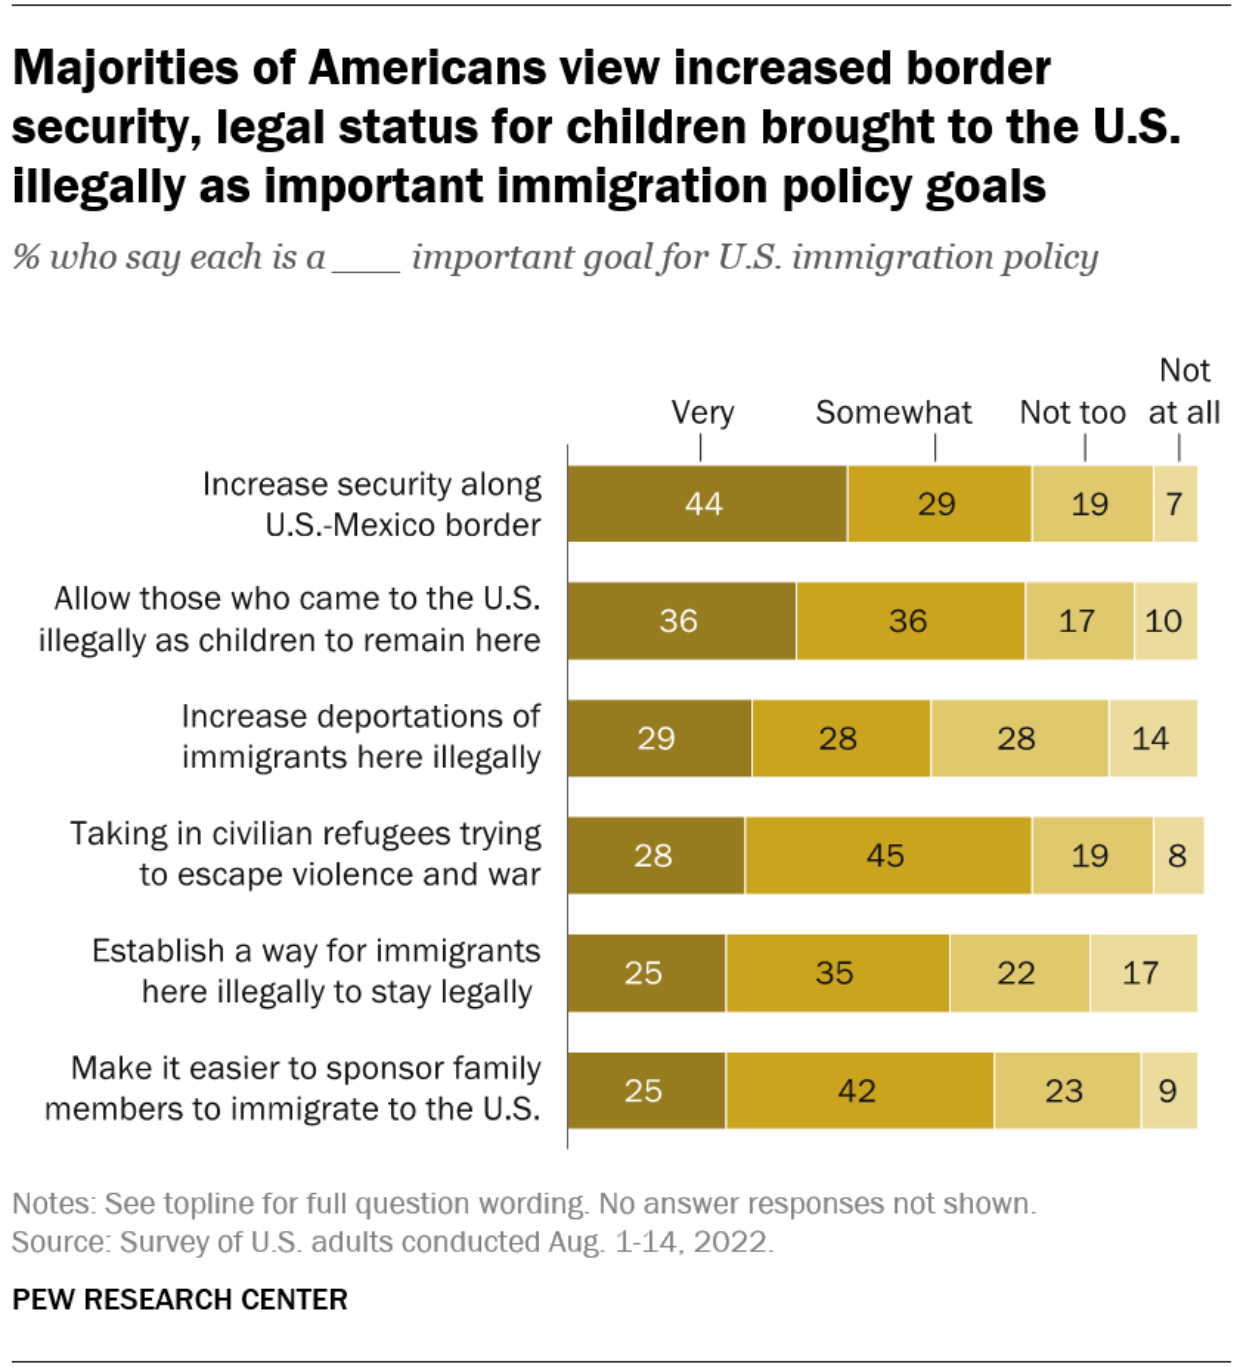 La mayoría de los estadounidenses apoya aumentar la seguridad fronteriza y legalizar a los dreamers,